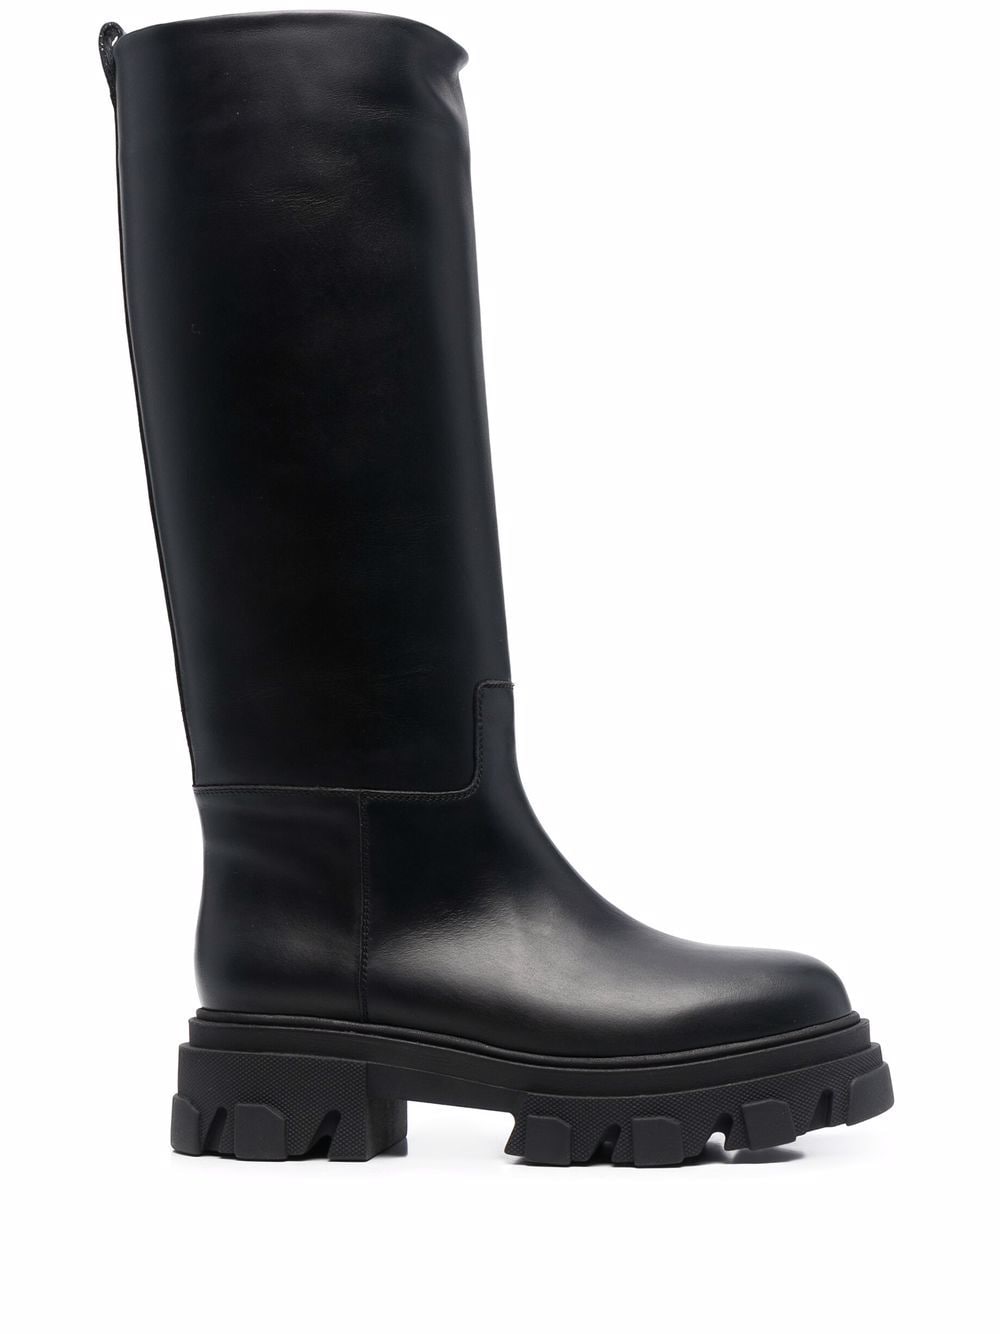 Image 1 of GIABORGHINI Perni 07 leather boots